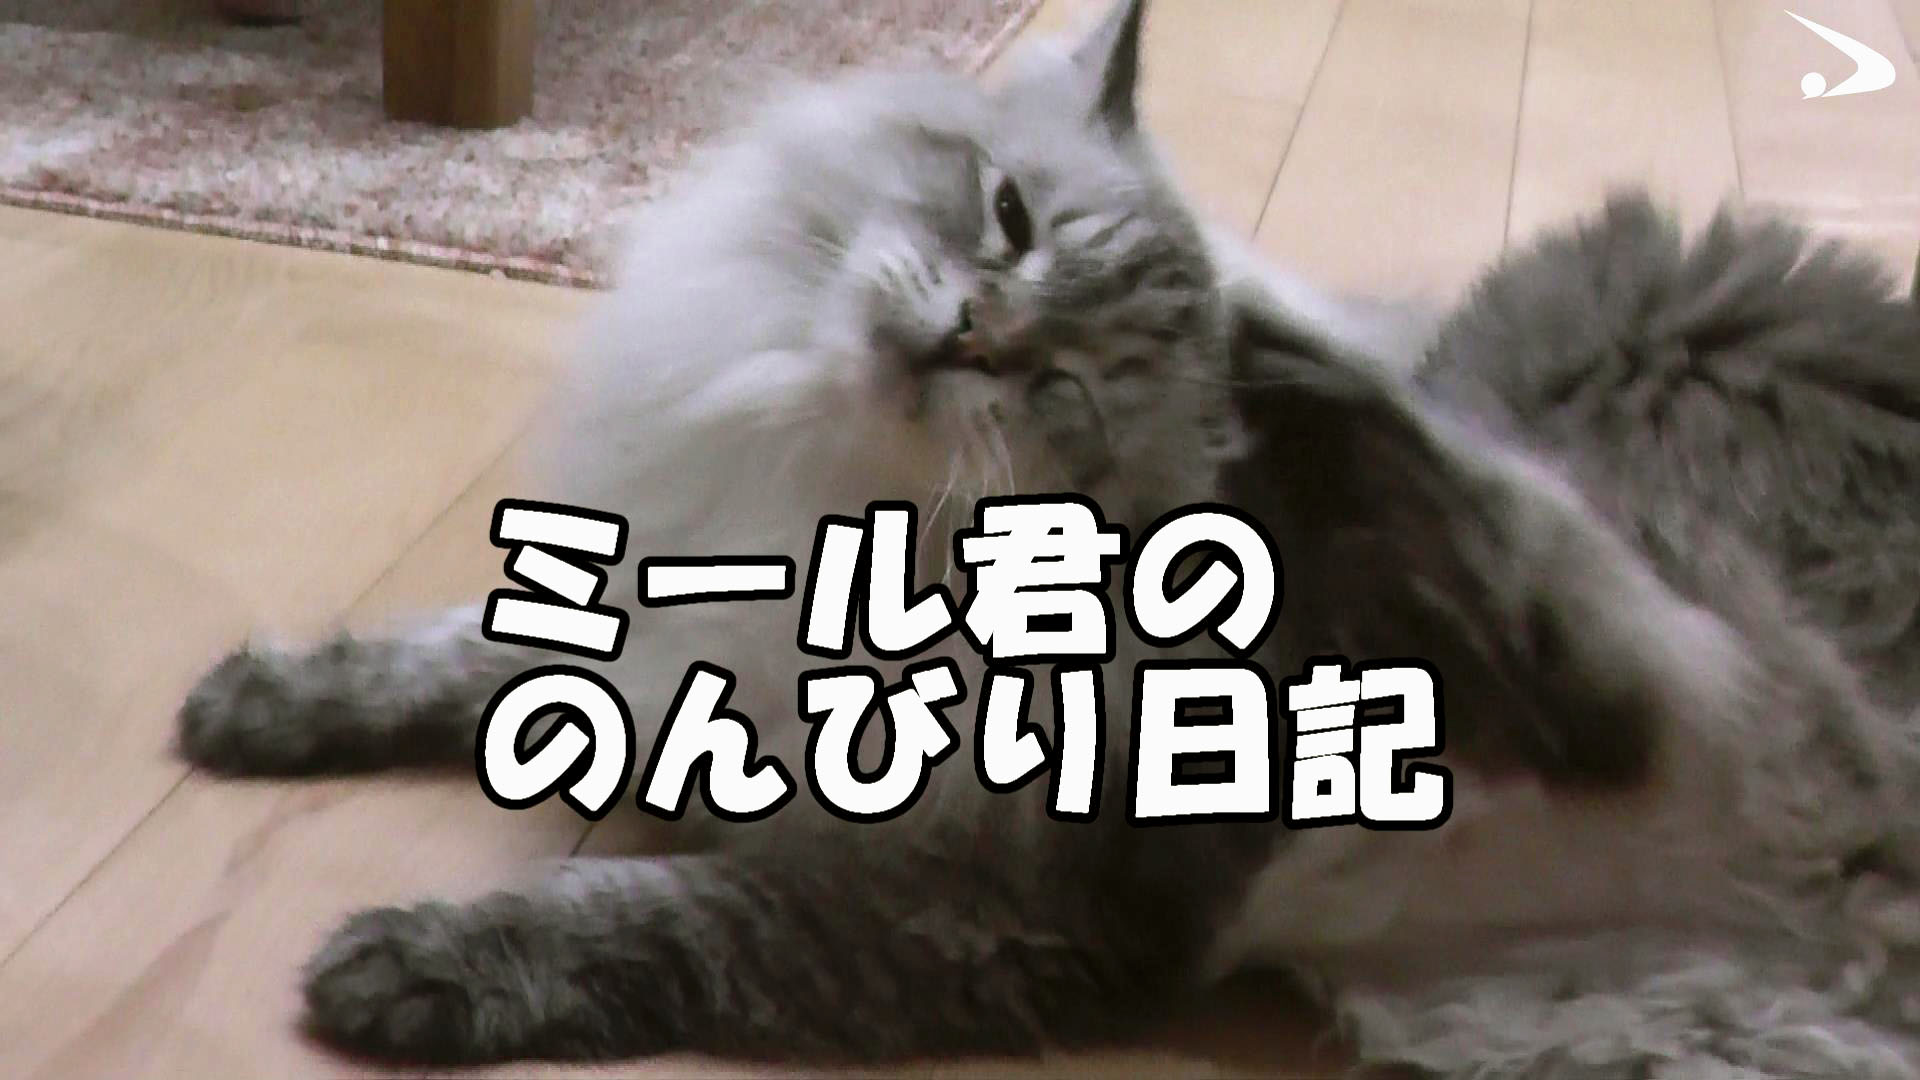 猫に罪なし」 プーチン氏贈呈「ミール」の動画公開 秋田 - 産経ニュース